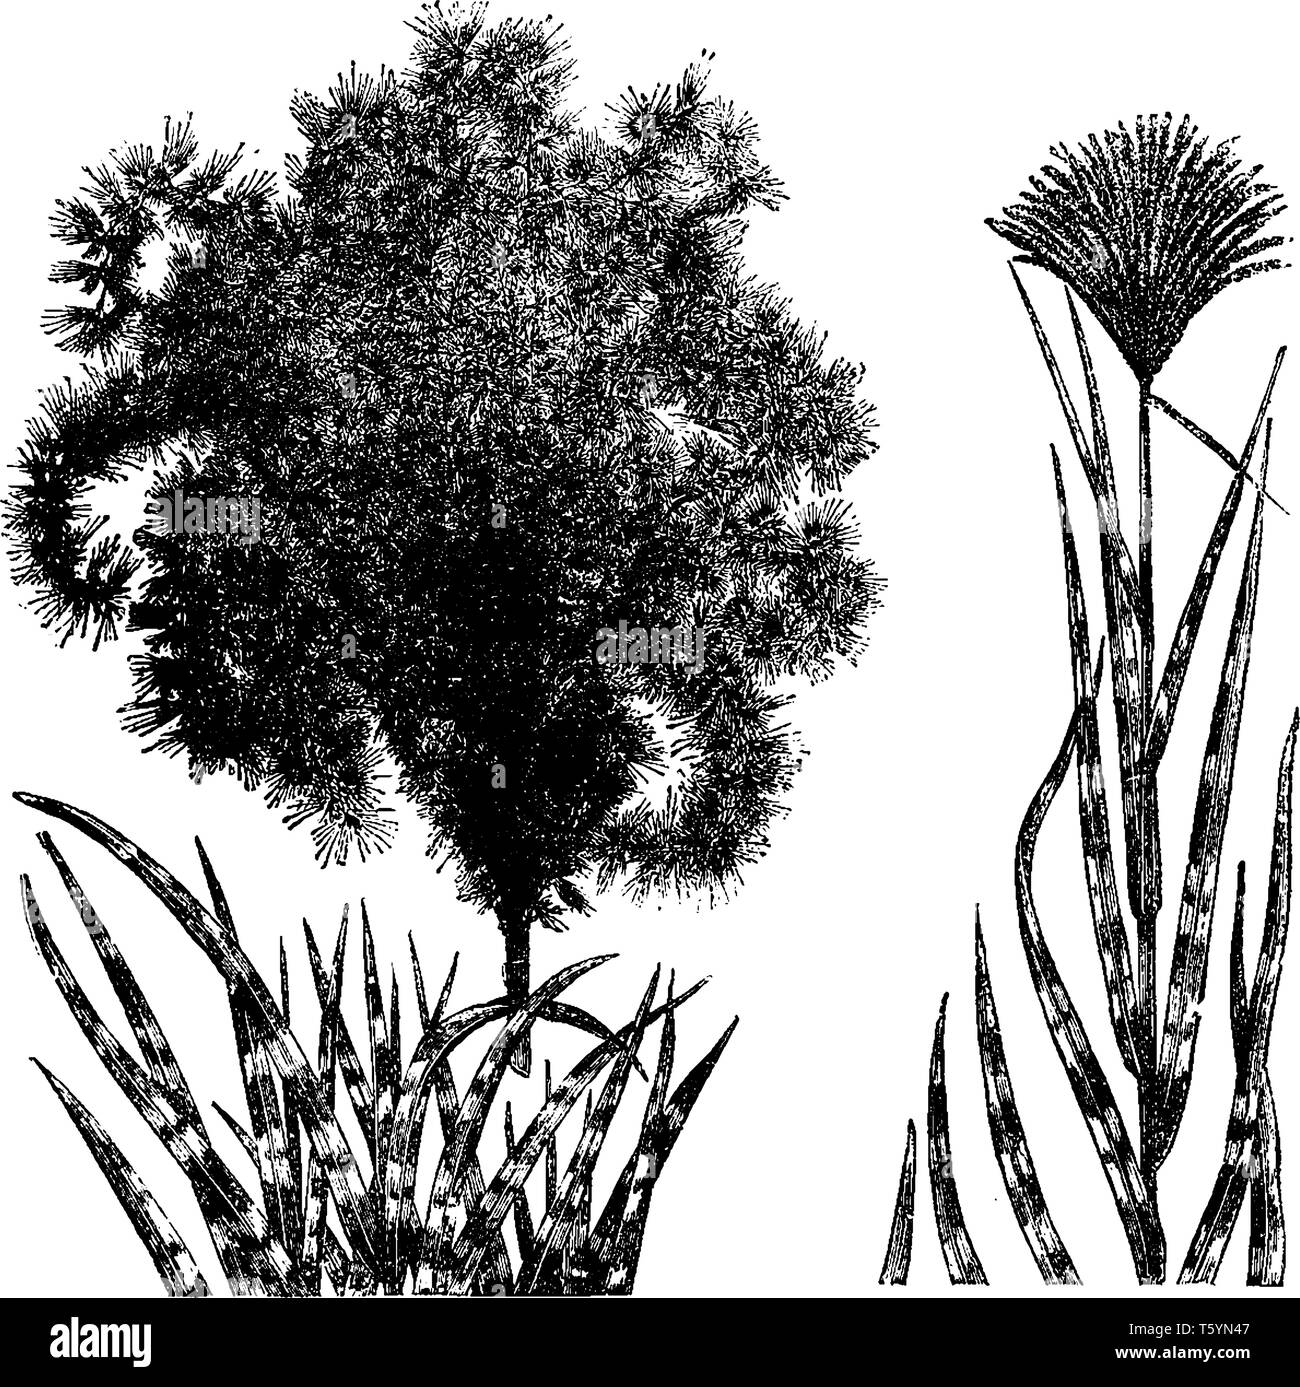 Eulalia ist ornamental Gras und eine Gattung der asiatischen, afrikanischen und australischen Pflanzen in der Süßgräser, vintage Strichzeichnung oder Gravur Abbildung. Stock Vektor